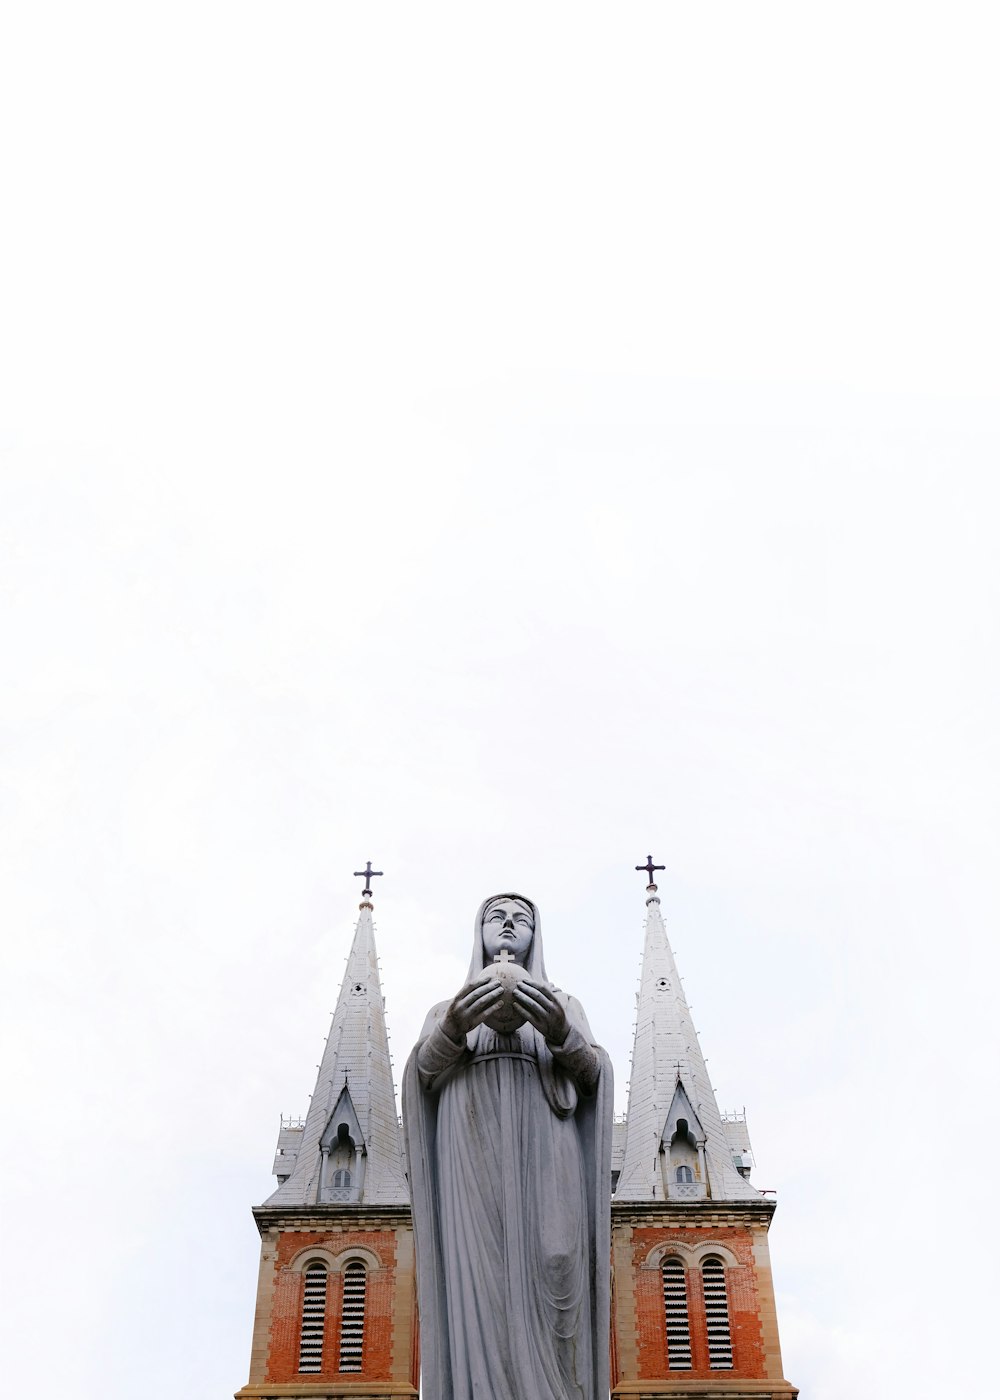 Photographie en contre-plongée d’une sculpture religieuse à l’extérieur de la cathédrale pendant la journée